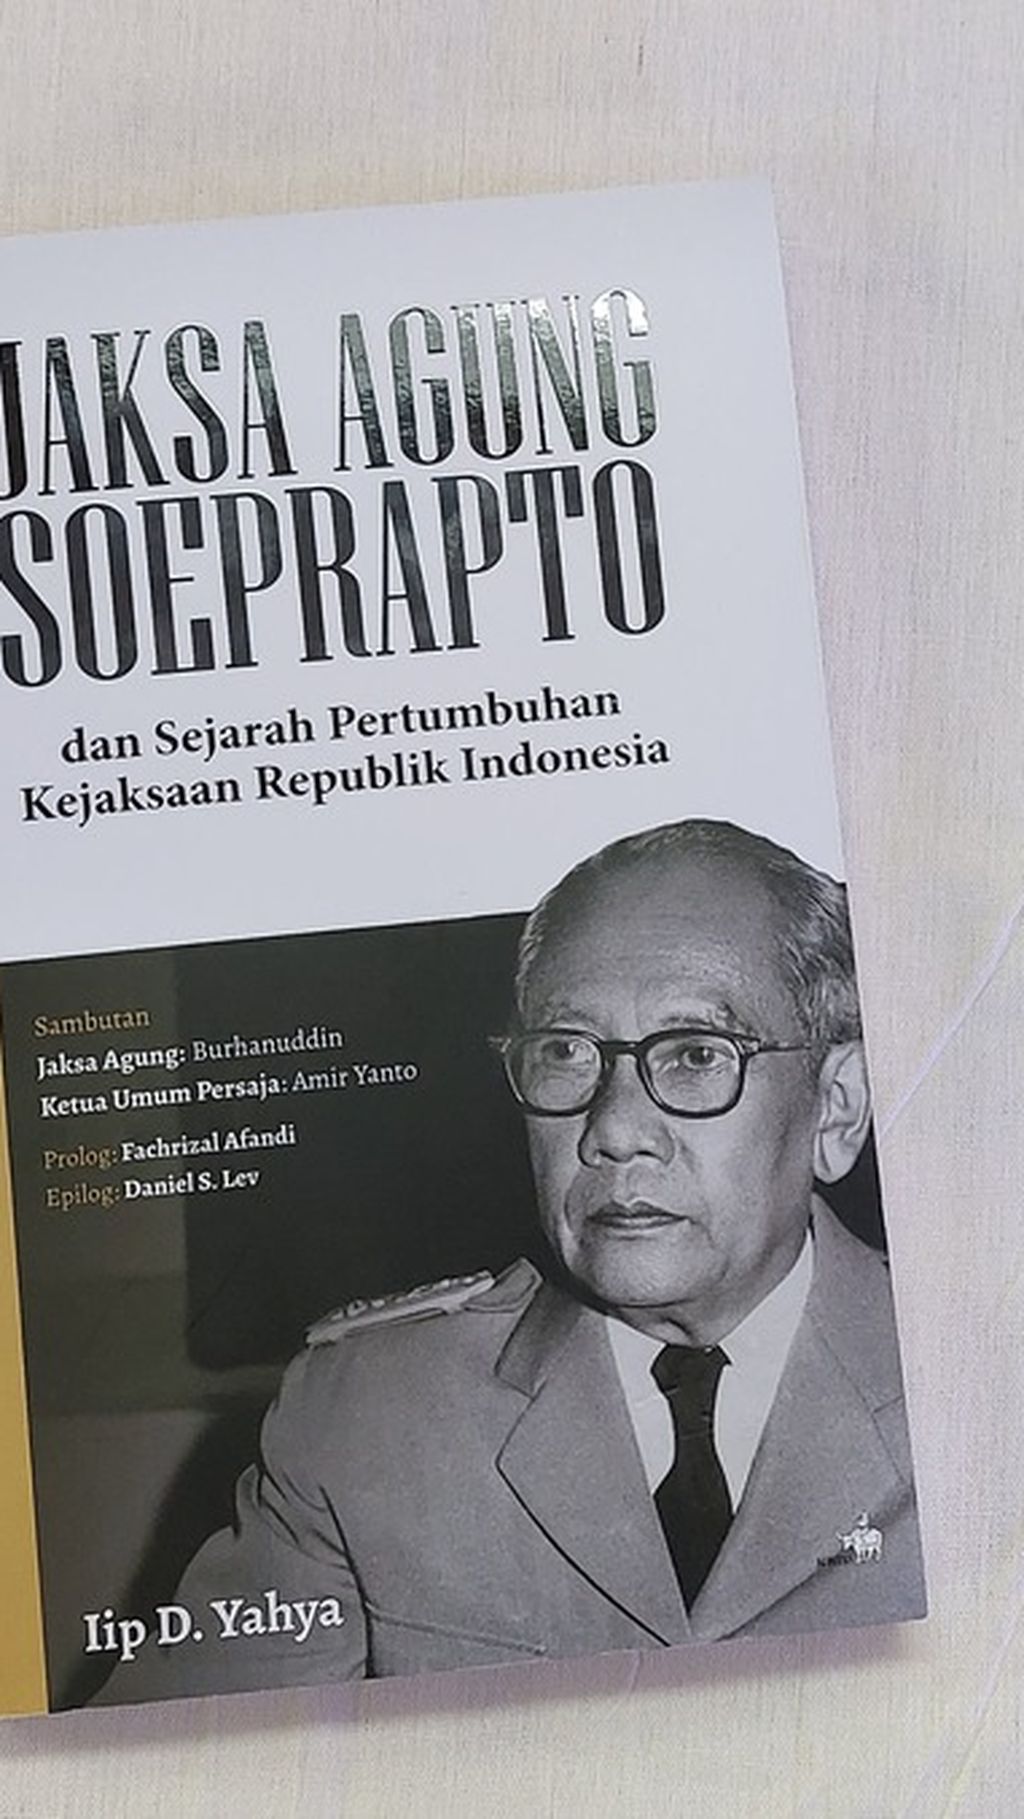 Halaman muka buku berjudul 'Jaksa Agung Soeprapto dan Sejarah Pertumbuhan Kejaksaan Republik Indonesia'